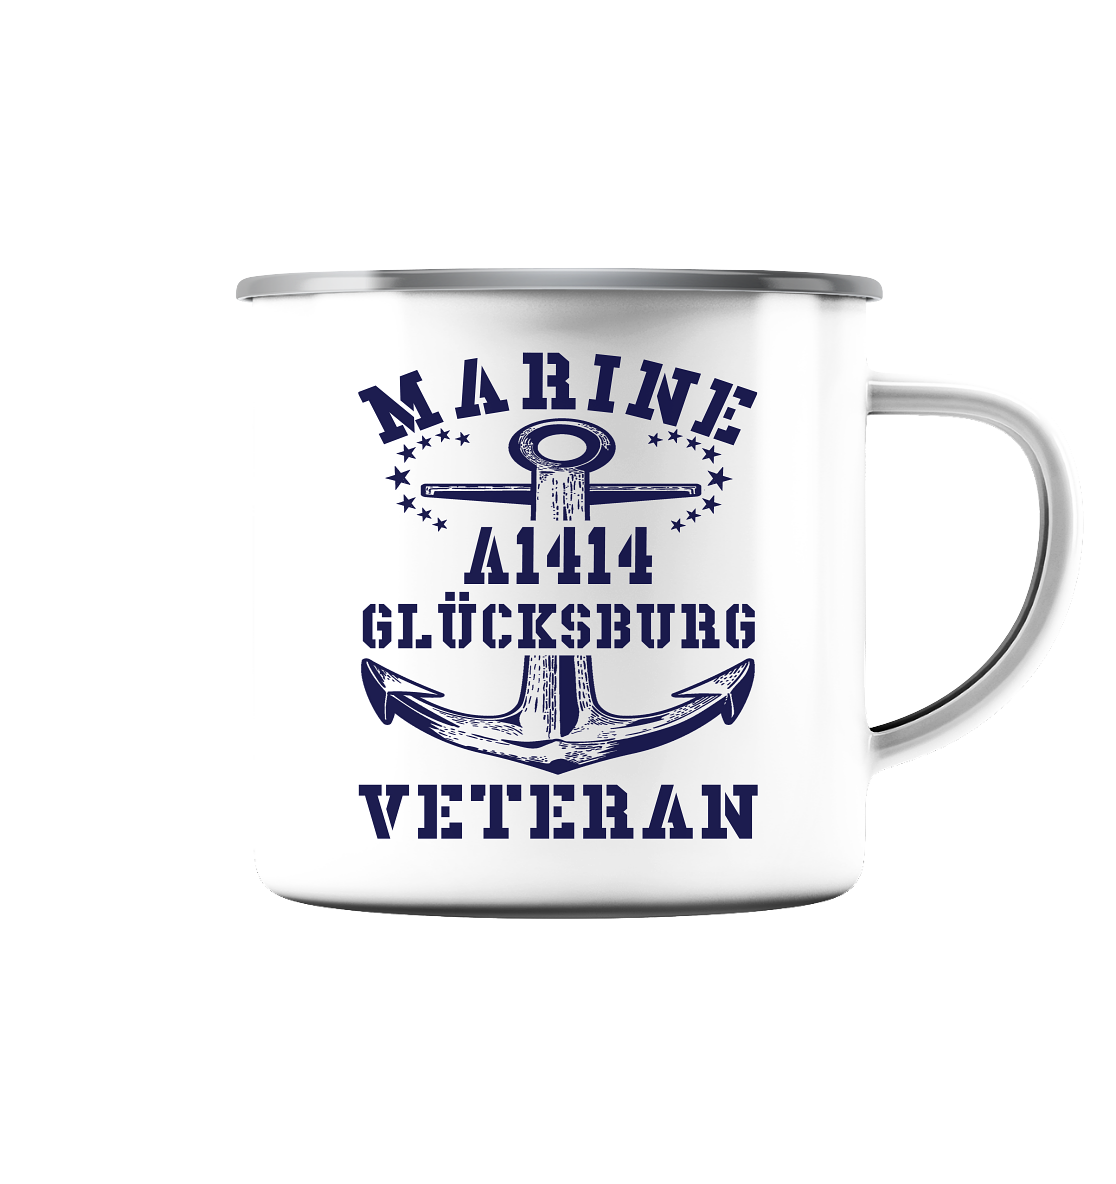 Troßschiff A1414 GLÜCKSBURG Marine Veteran - Emaille Tasse (Silber)